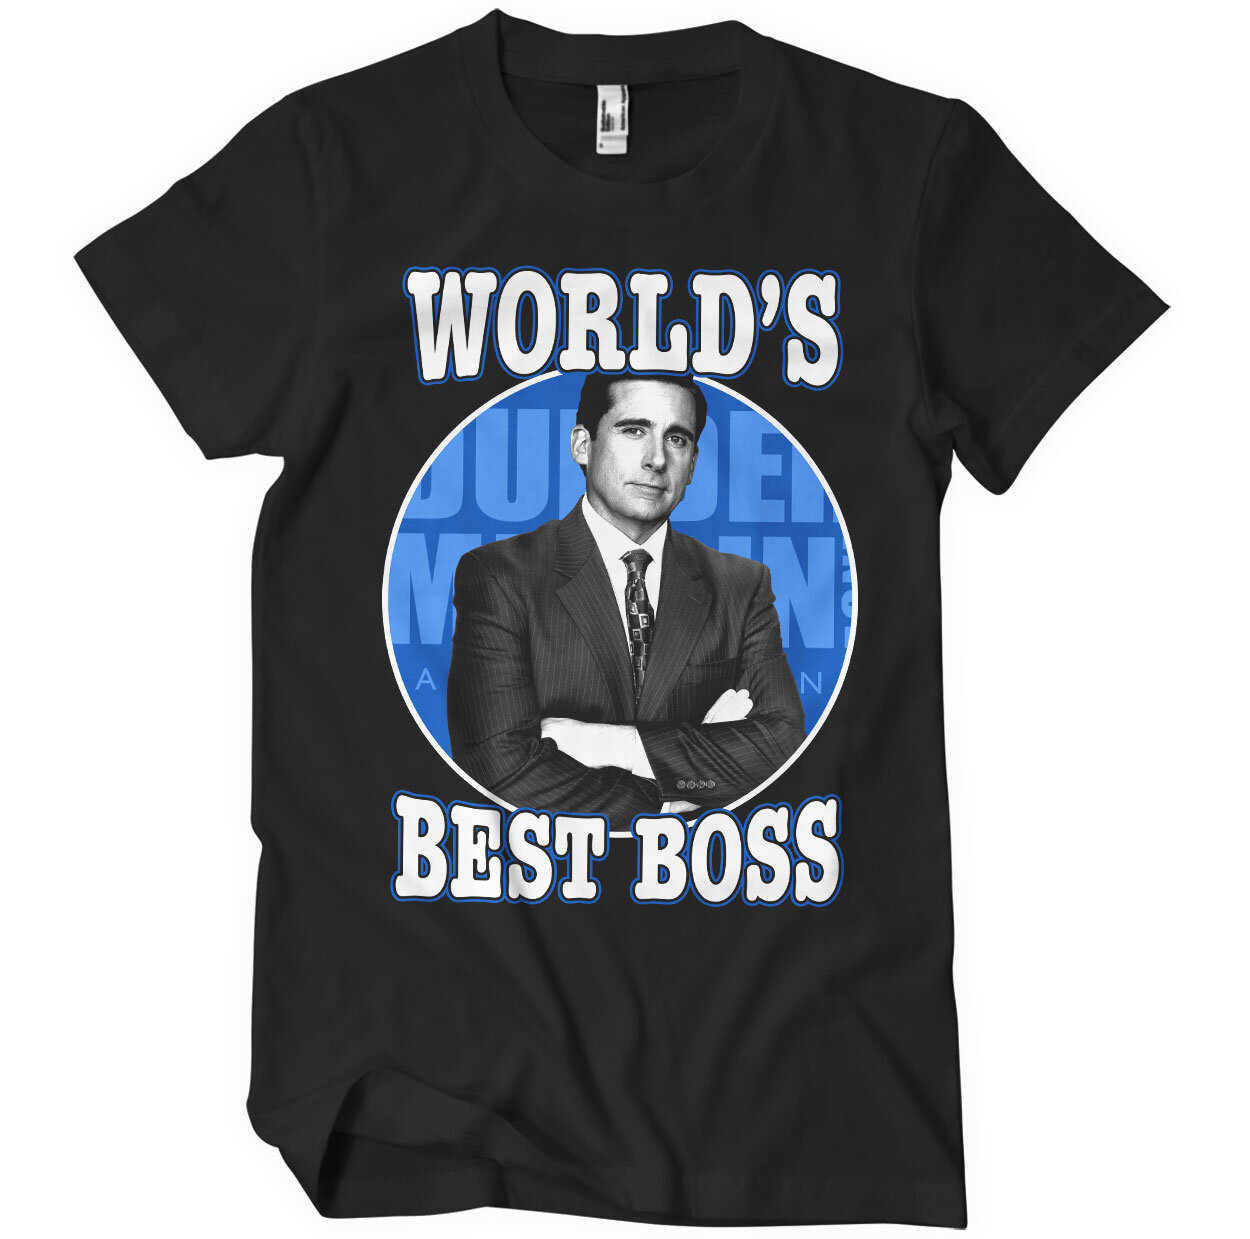 World's Best Boss T-Shirt